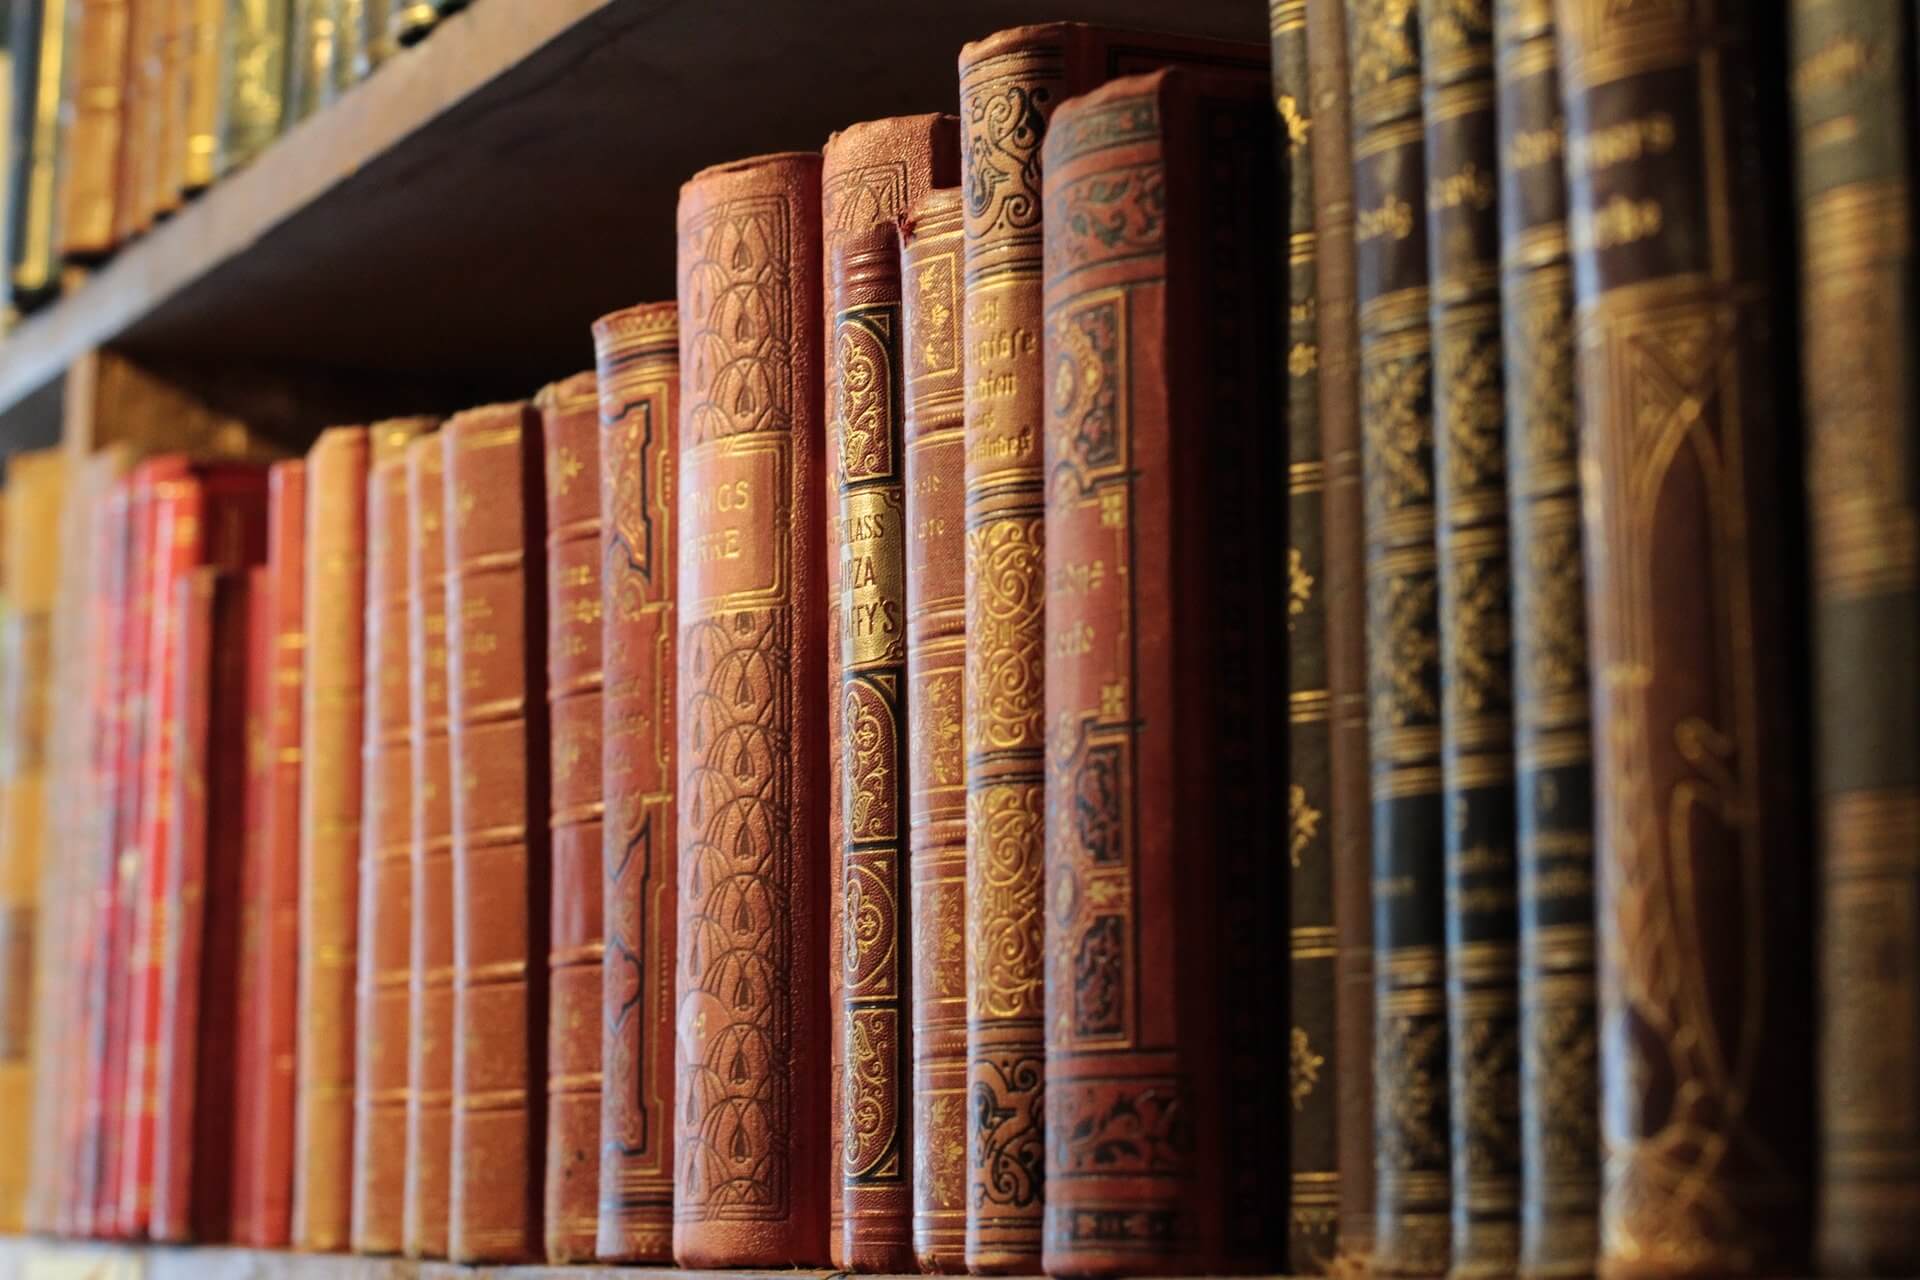 Projekt Forschungsbibliothek zur Geschichte der deutschen Sprache veranschaulicht durch alte Bücher in einer Bücherwand einer Bibliothek